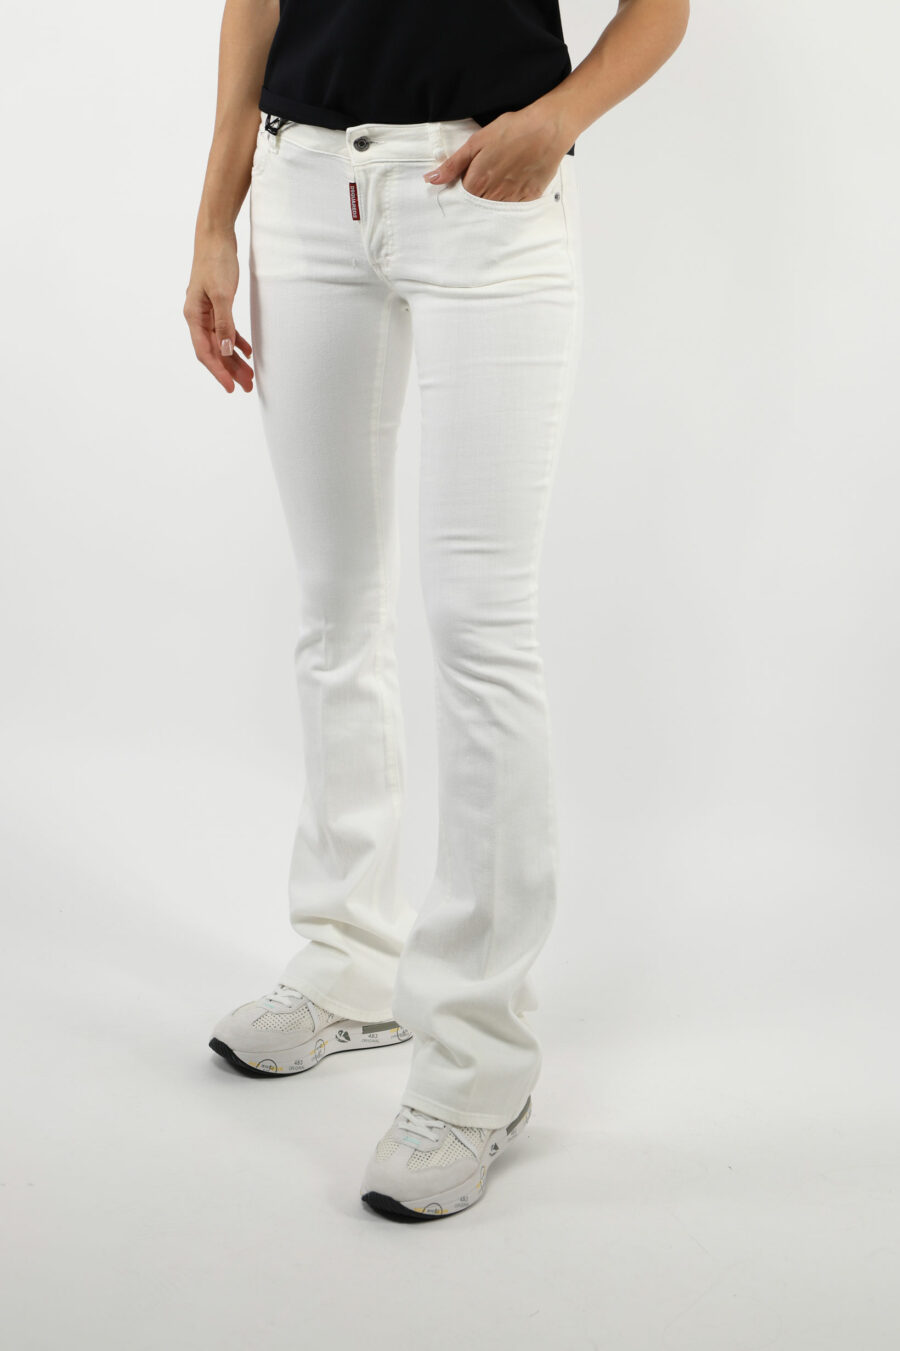 Pantalón vaquero blanco "twiggy jean" con bota ancha - 109796